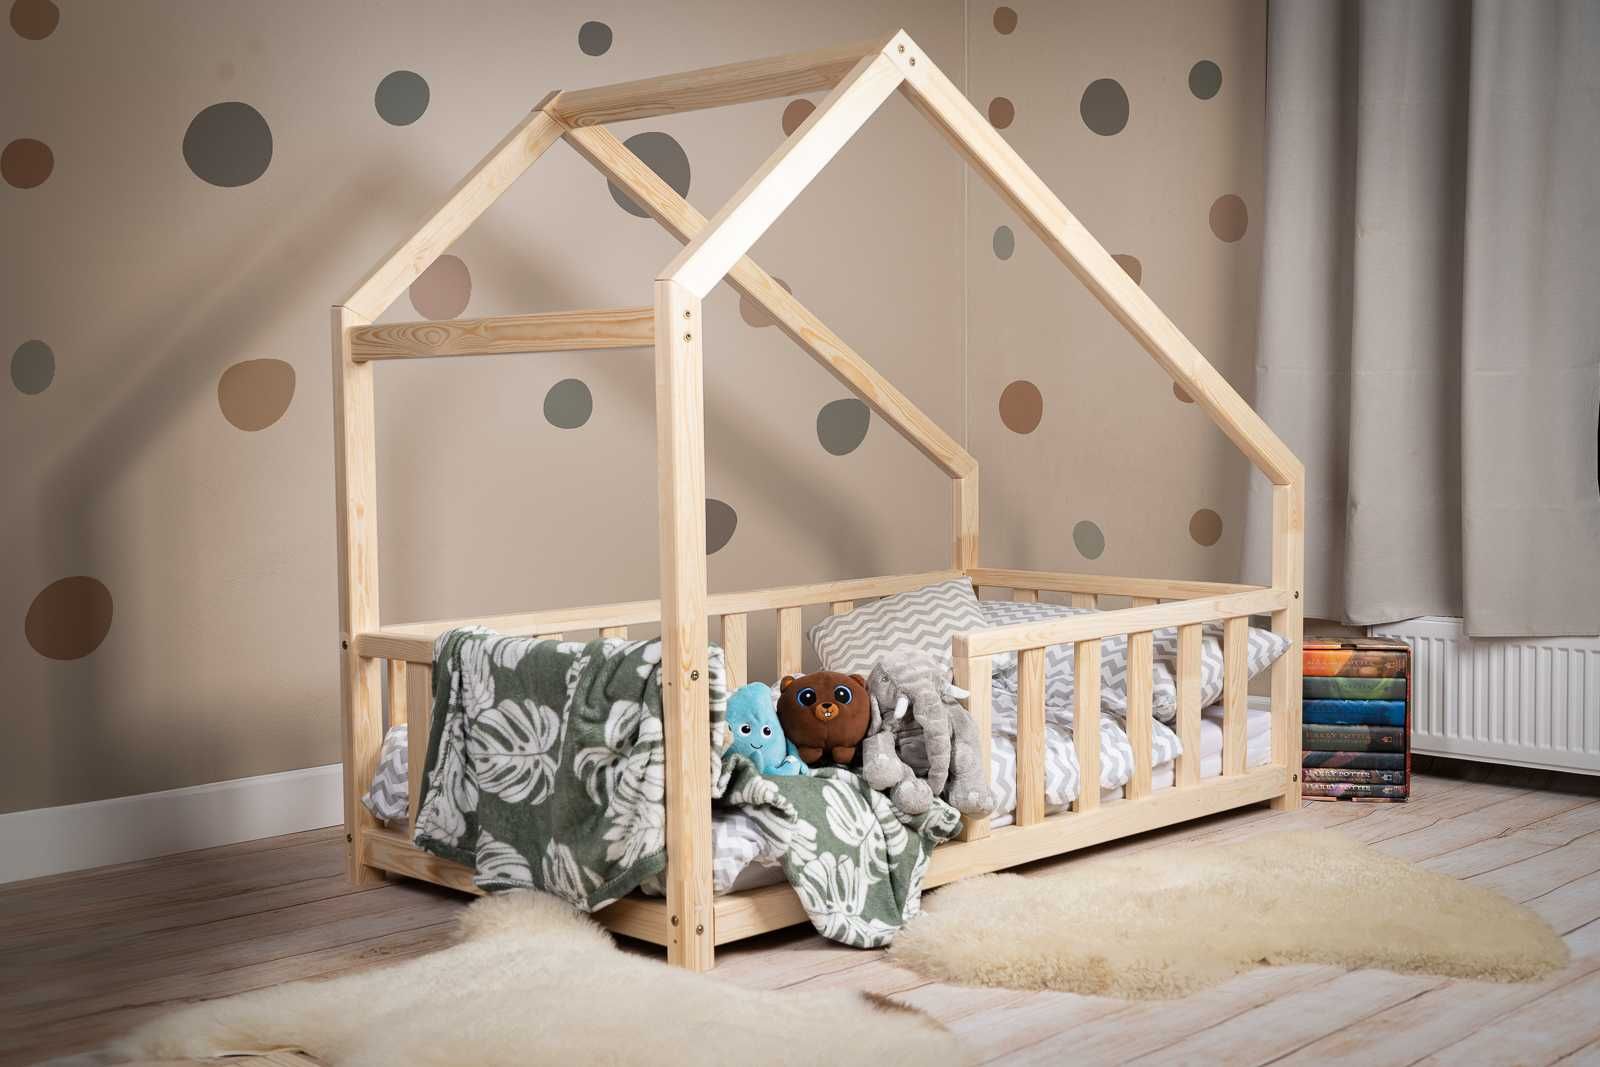 Łóżko domek dla dziecka, łóżko domek, łóżko tipi - Kidbeds.pl